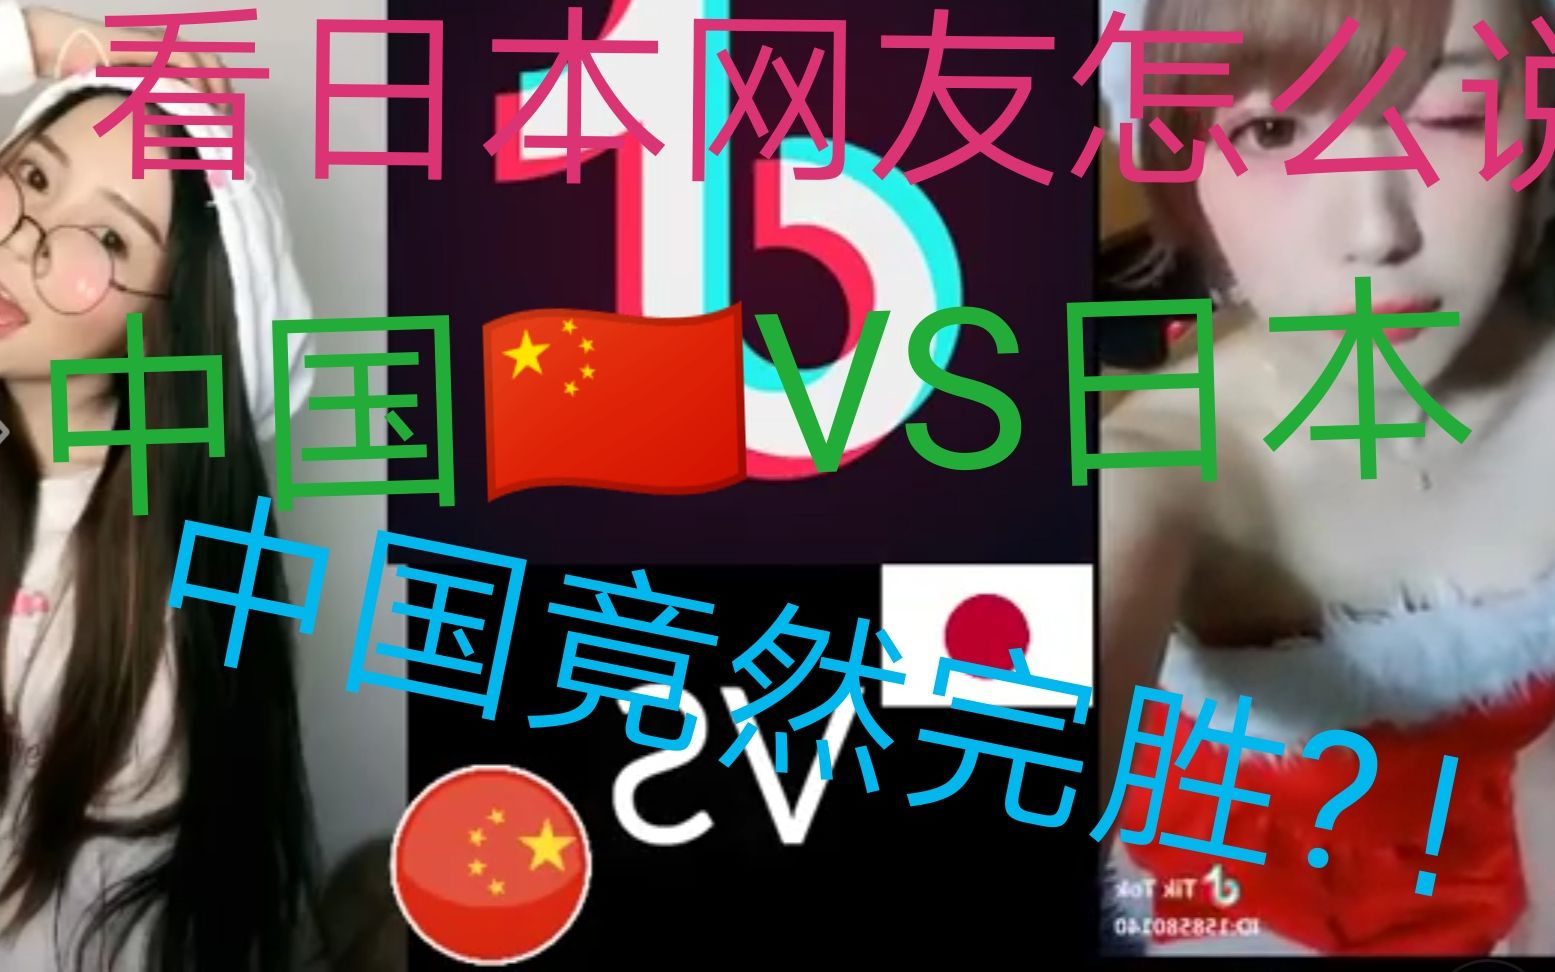 日本网友看中日抖音对比视频竟然说中国人基因好？！[油管搬运评论]内容欢乐